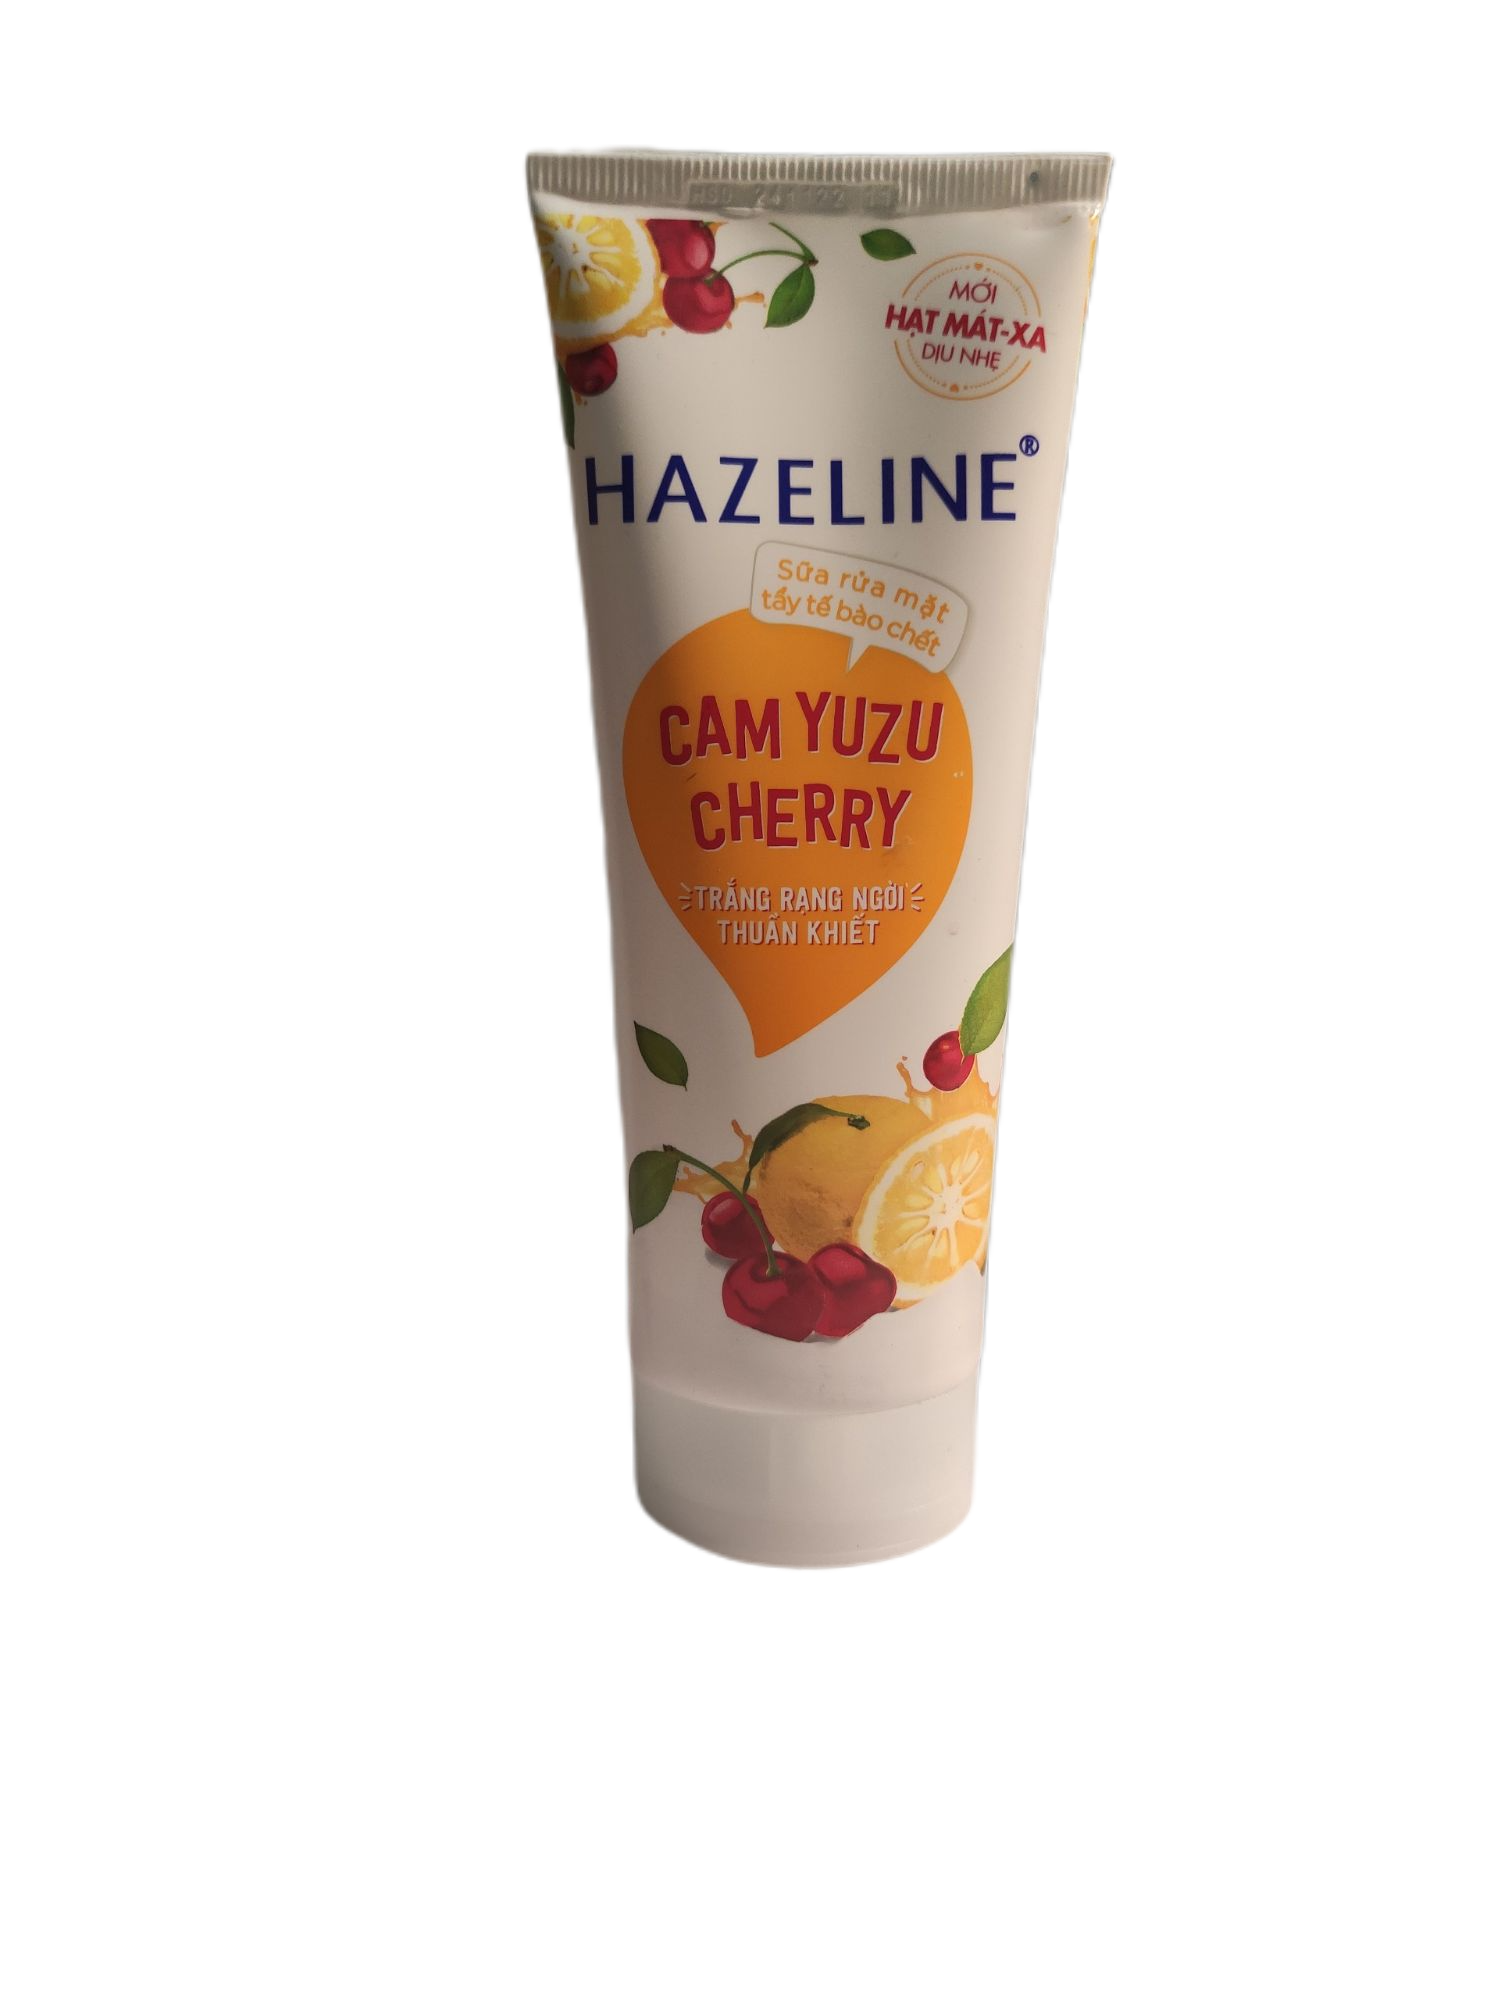 Sữa rửa mặt Hazeline cam yuzu cherry 100g